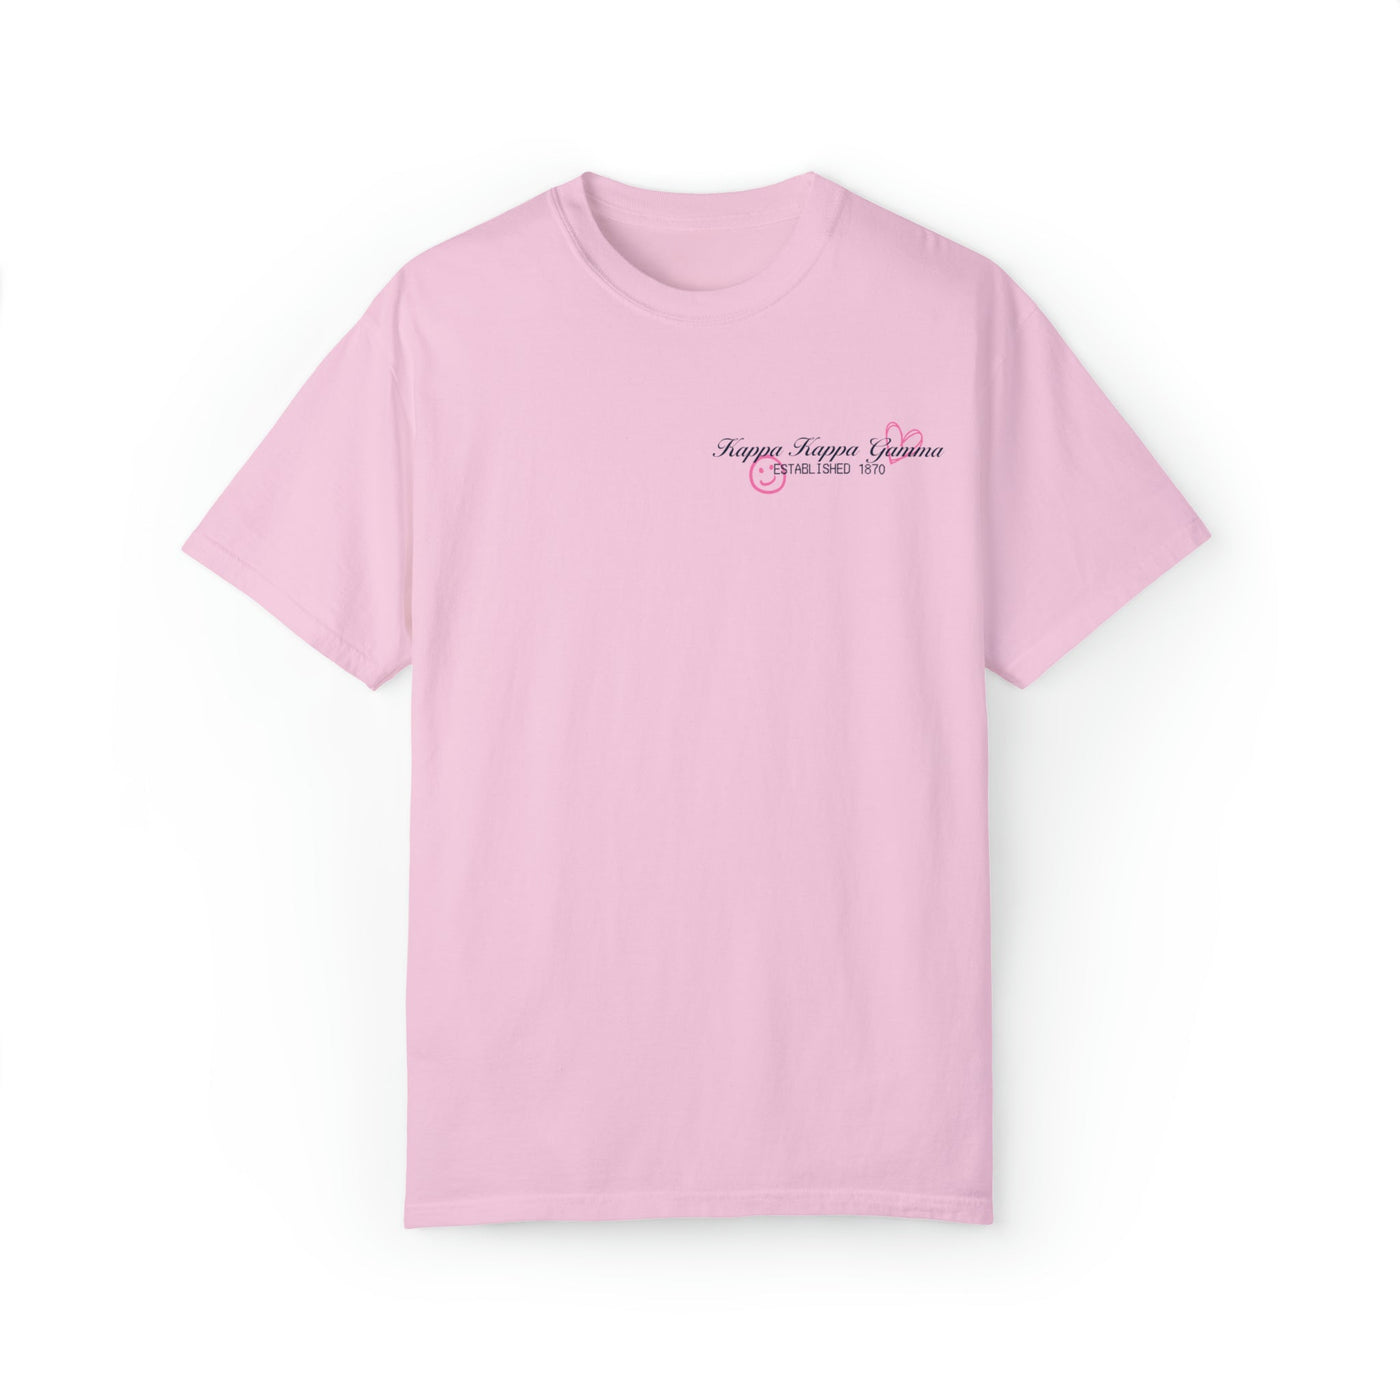 Kappa Kappa Gamma Sorority Receipt Comfy T-shirt